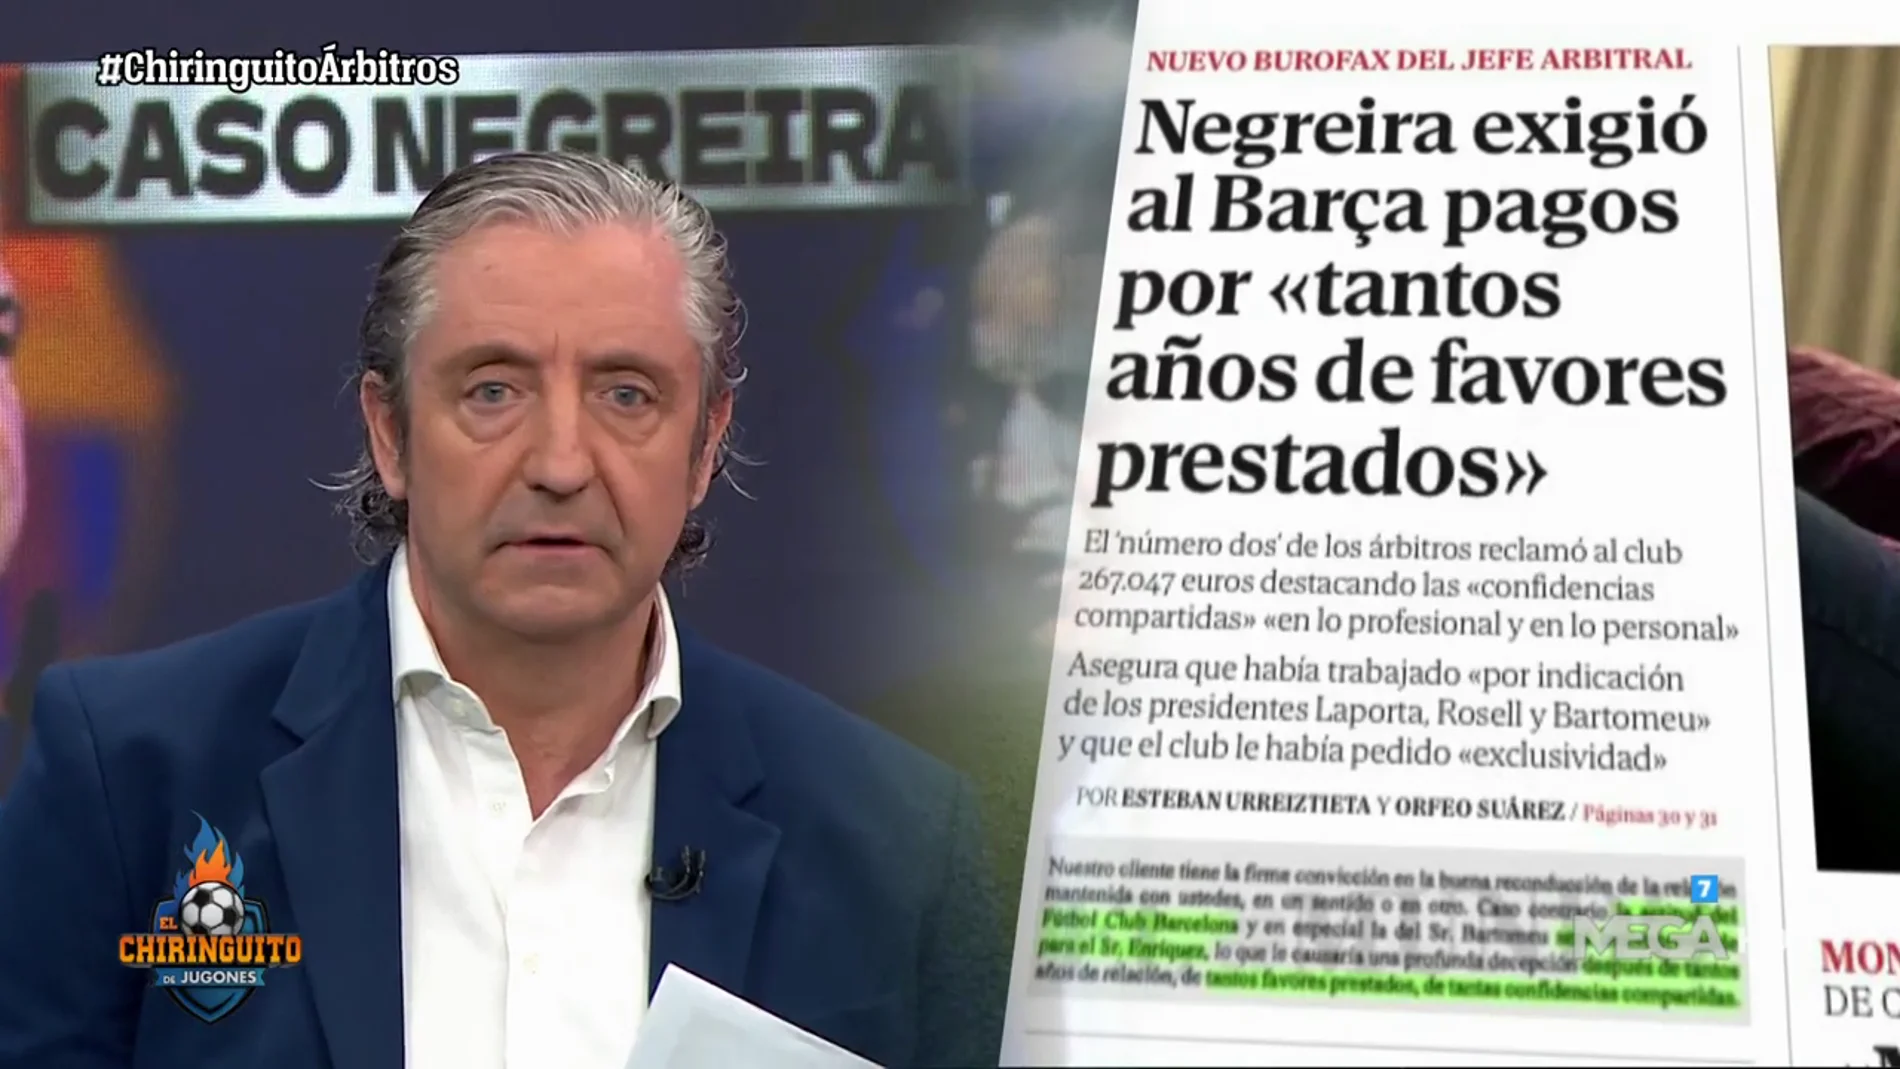 Negreira exigió al Barça pagos por...